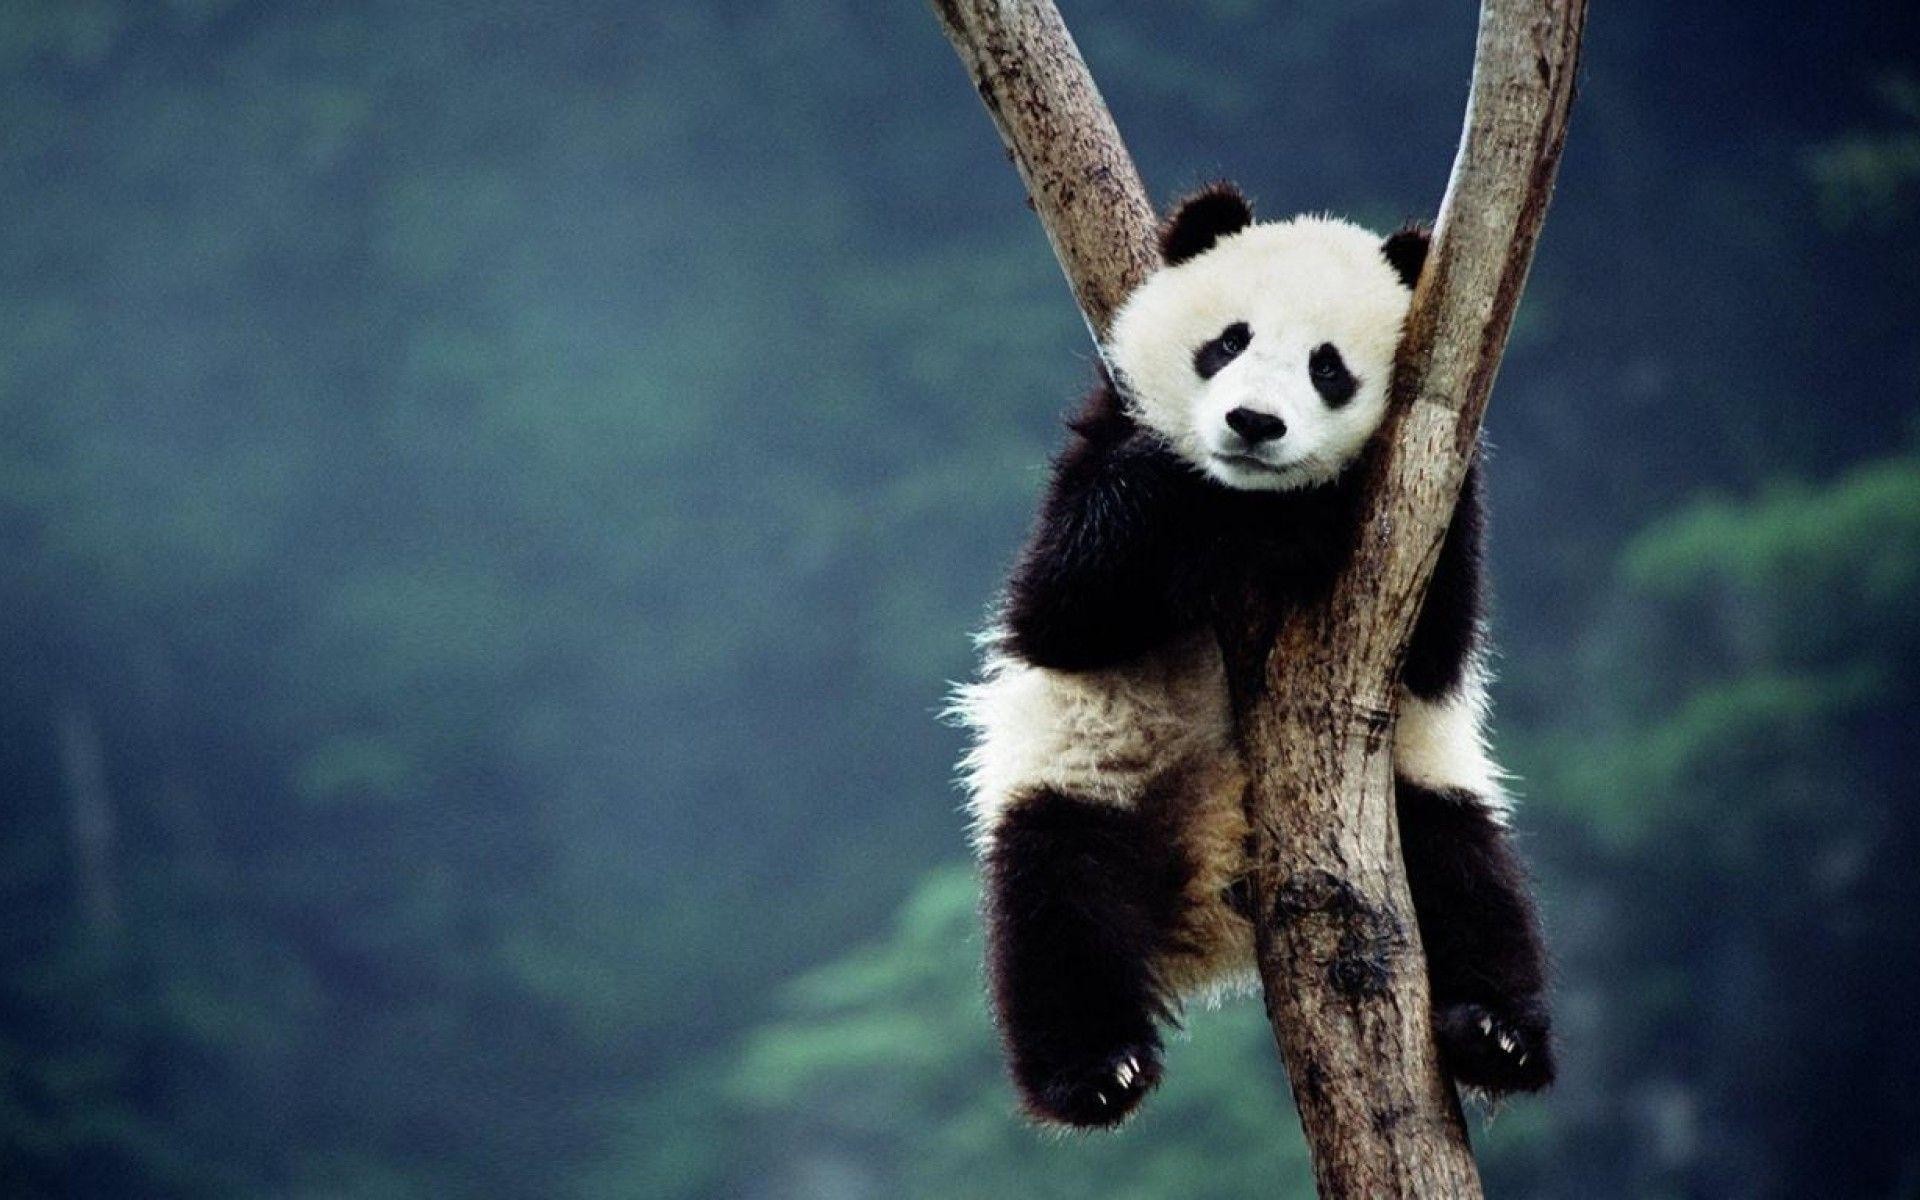 Gấu trúc panda: Tại sao lại có ai đó không thích loài gấu trúc đáng yêu này chứ? Bức ảnh này sẽ khiến bạn thích thú với tính cách ngộ nghĩnh của loài gấu trúc. Hãy xem và cảm nhận niềm yêu thích sâu sắc đối với động vật vô cùng đáng yêu này.